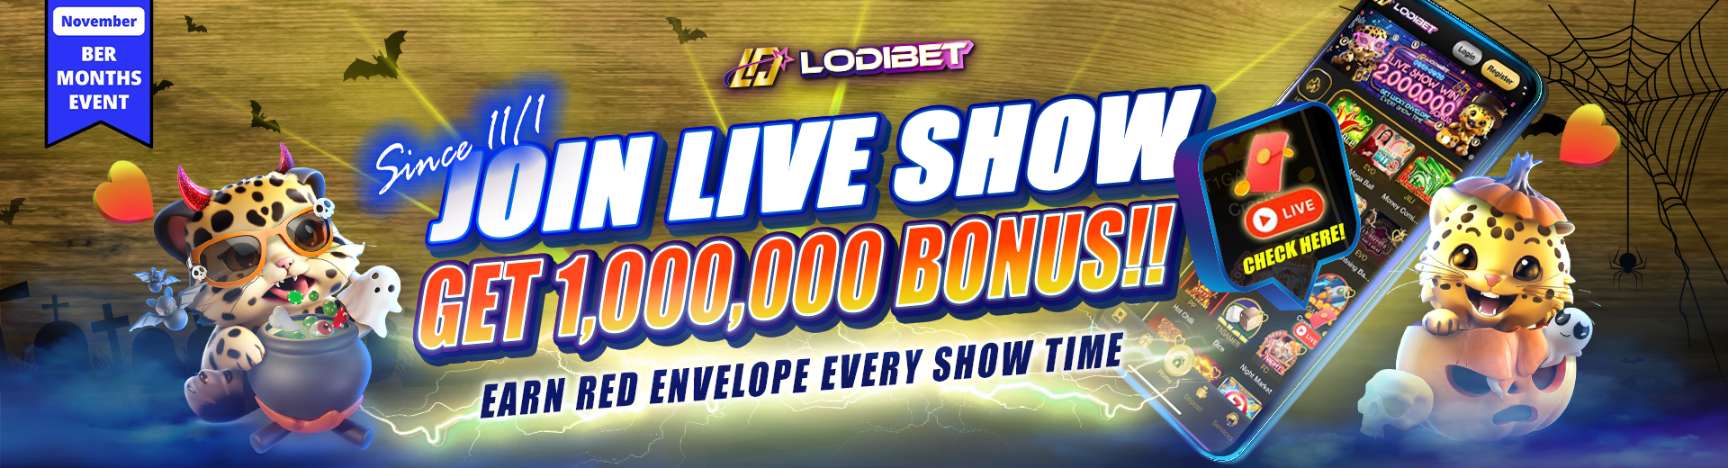 Lodibet Best Casino App